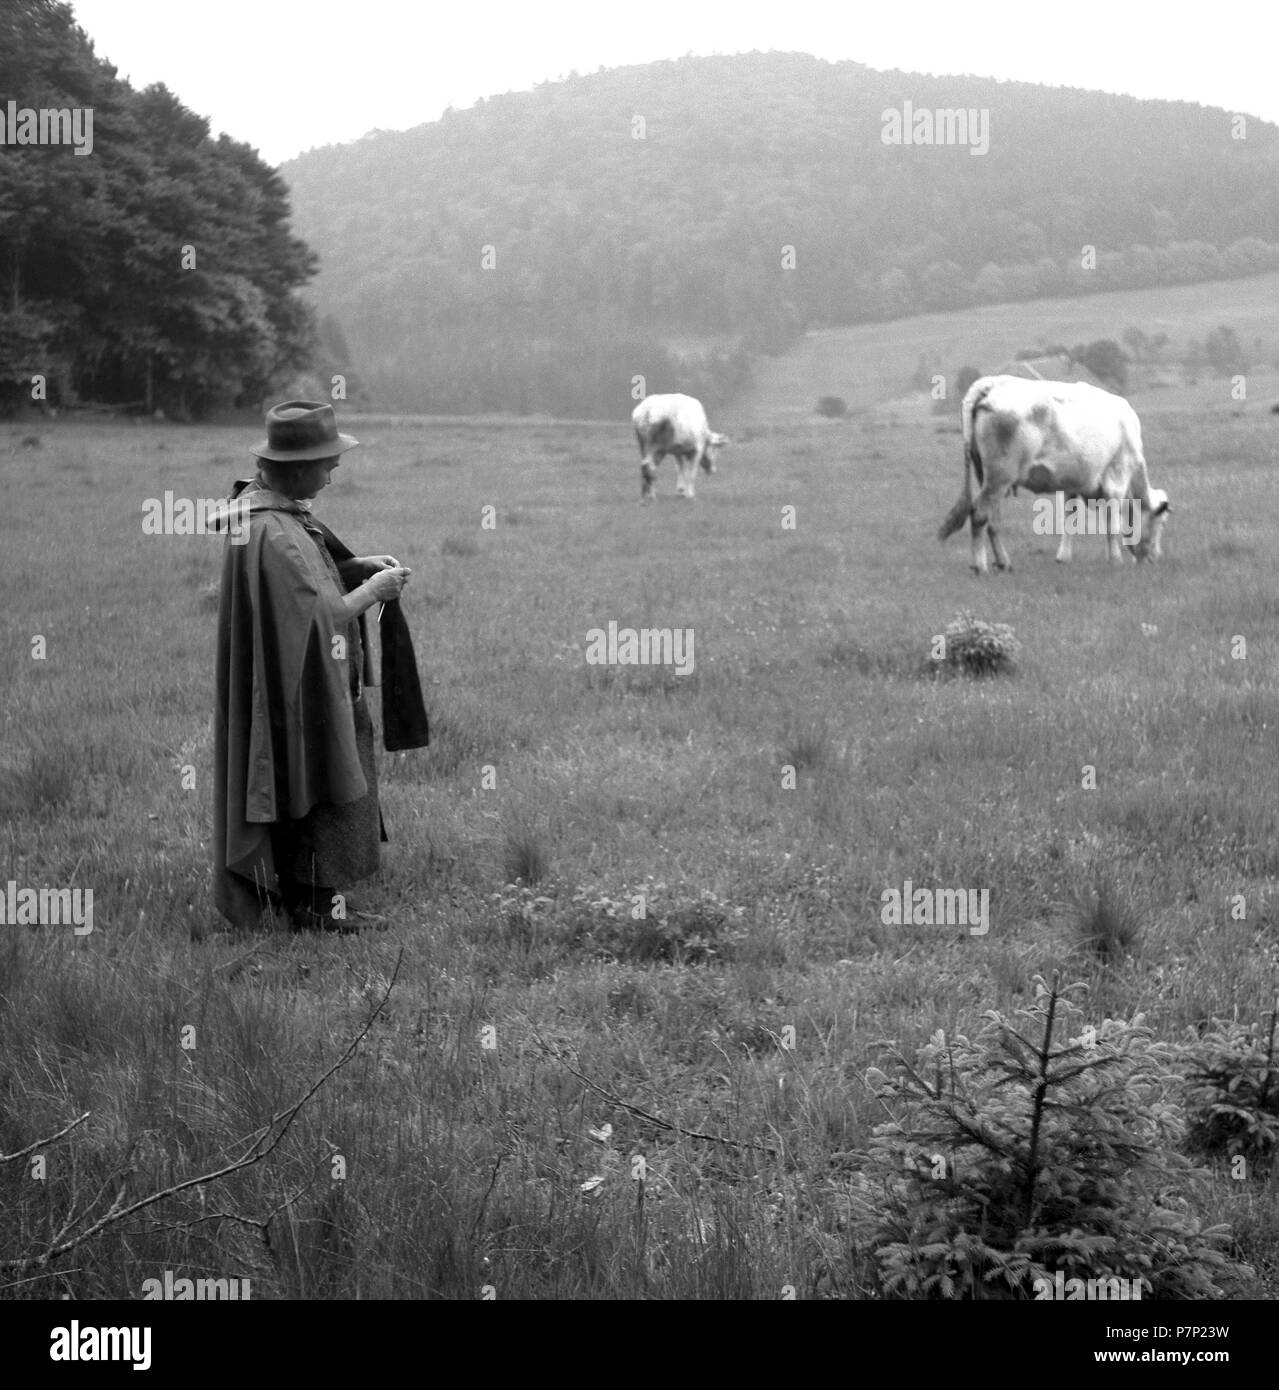 Pastore con mucche sul modo su campi, ca. Da 1945 a 1955, vicino a Freiburg, Germania Foto Stock